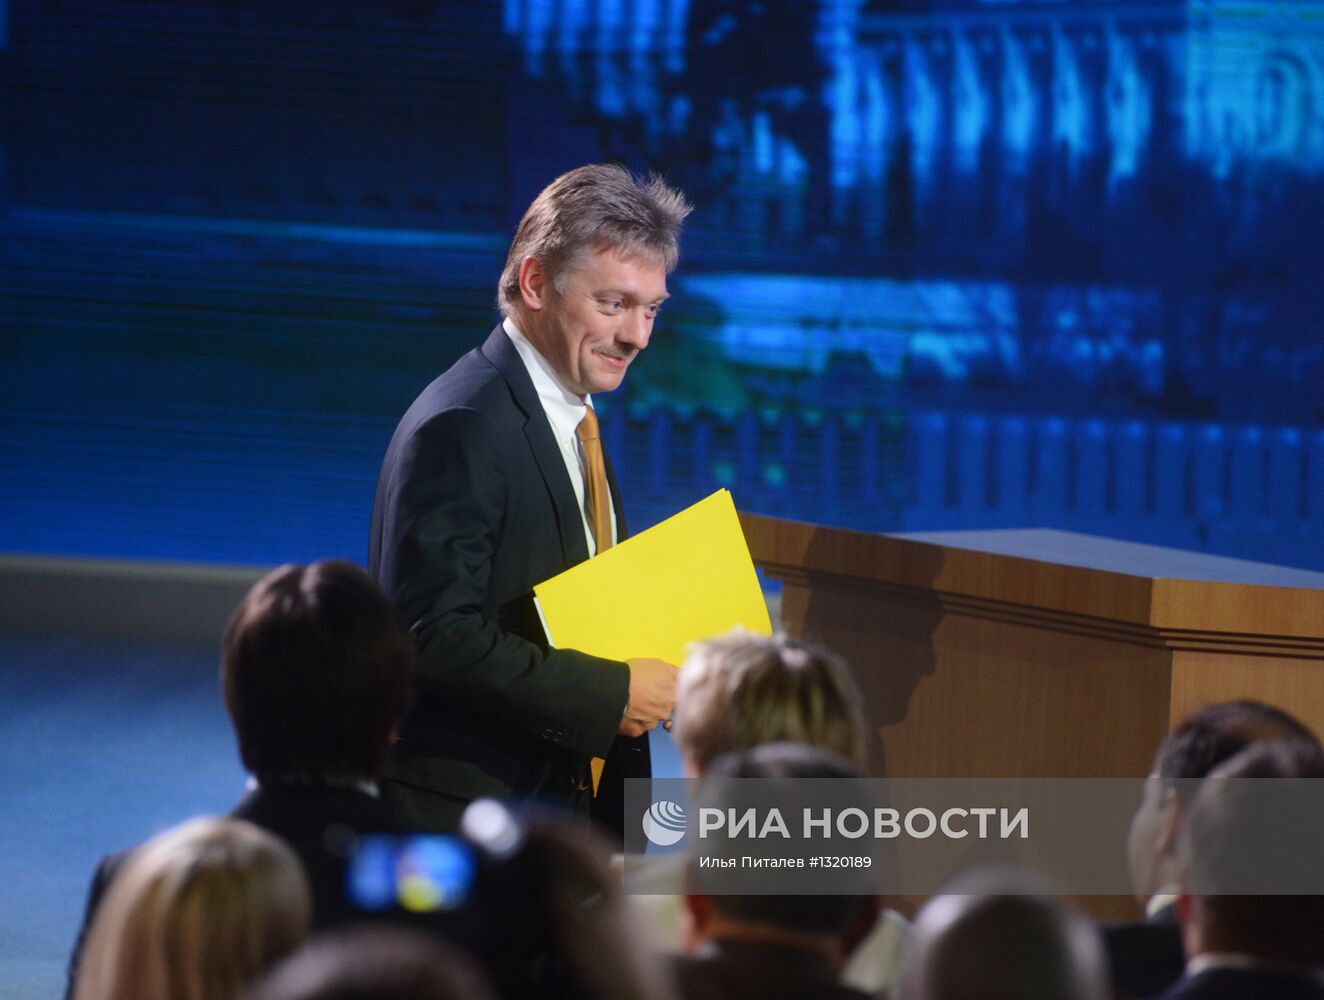 Дмитрий Песков на пресс-конференции Владимира Путина